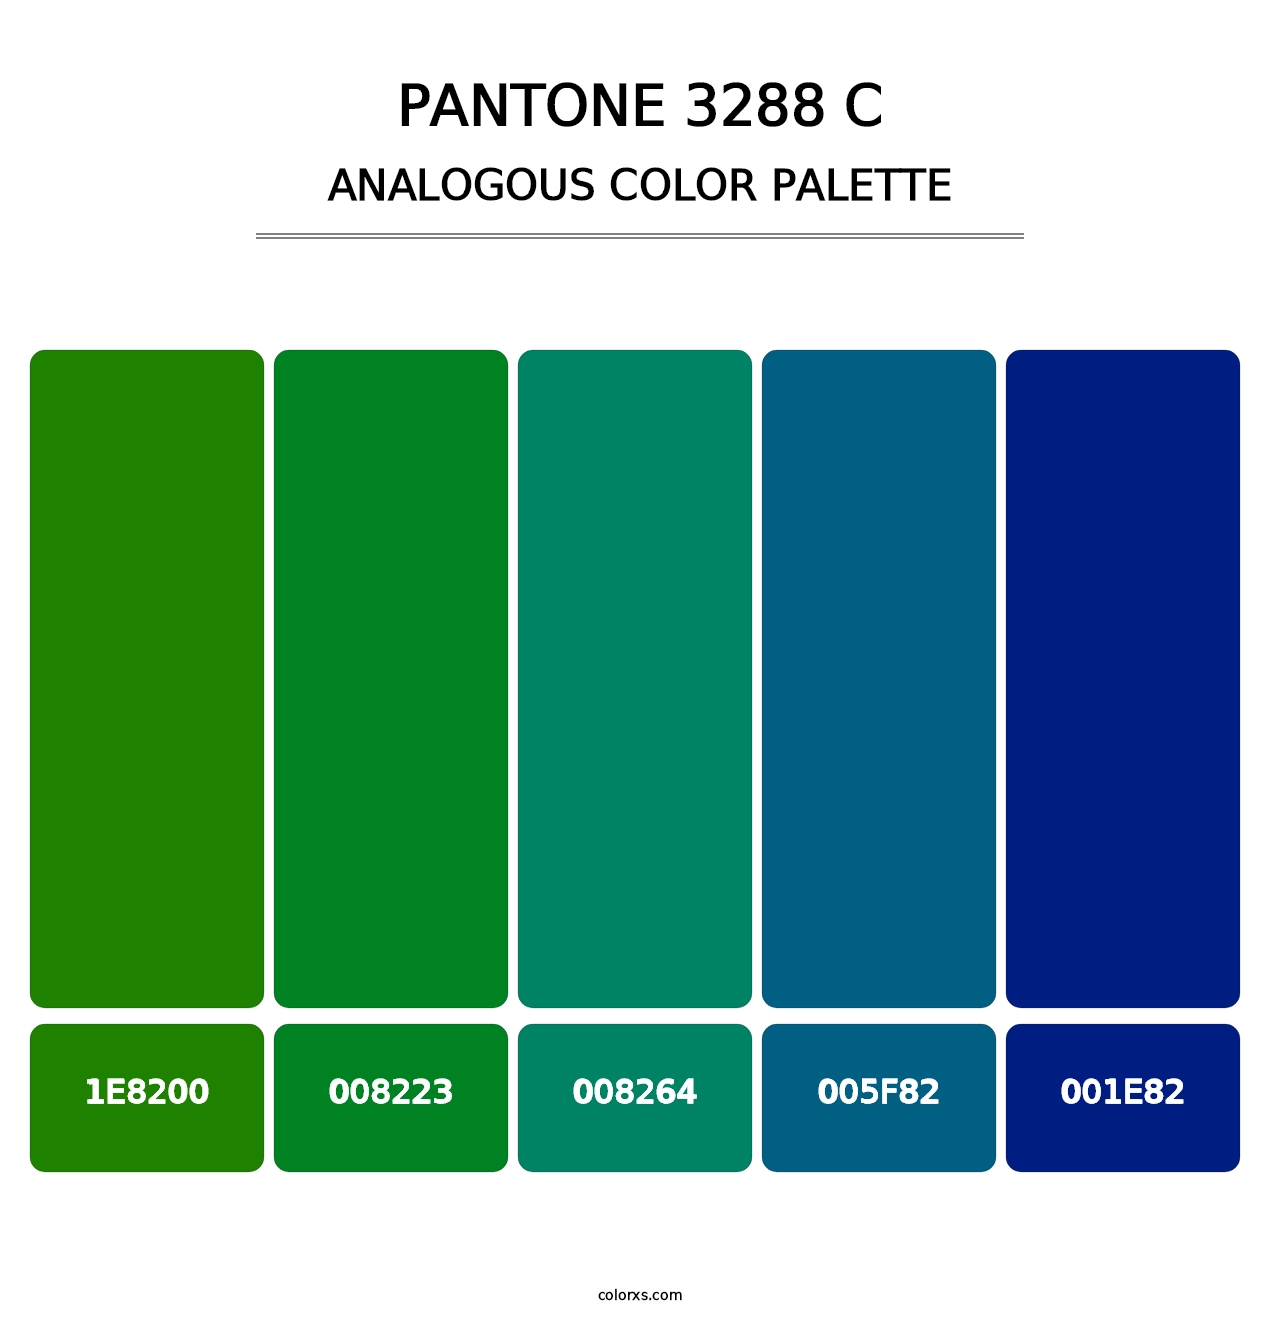 PANTONE 3288 C - Analogous Color Palette